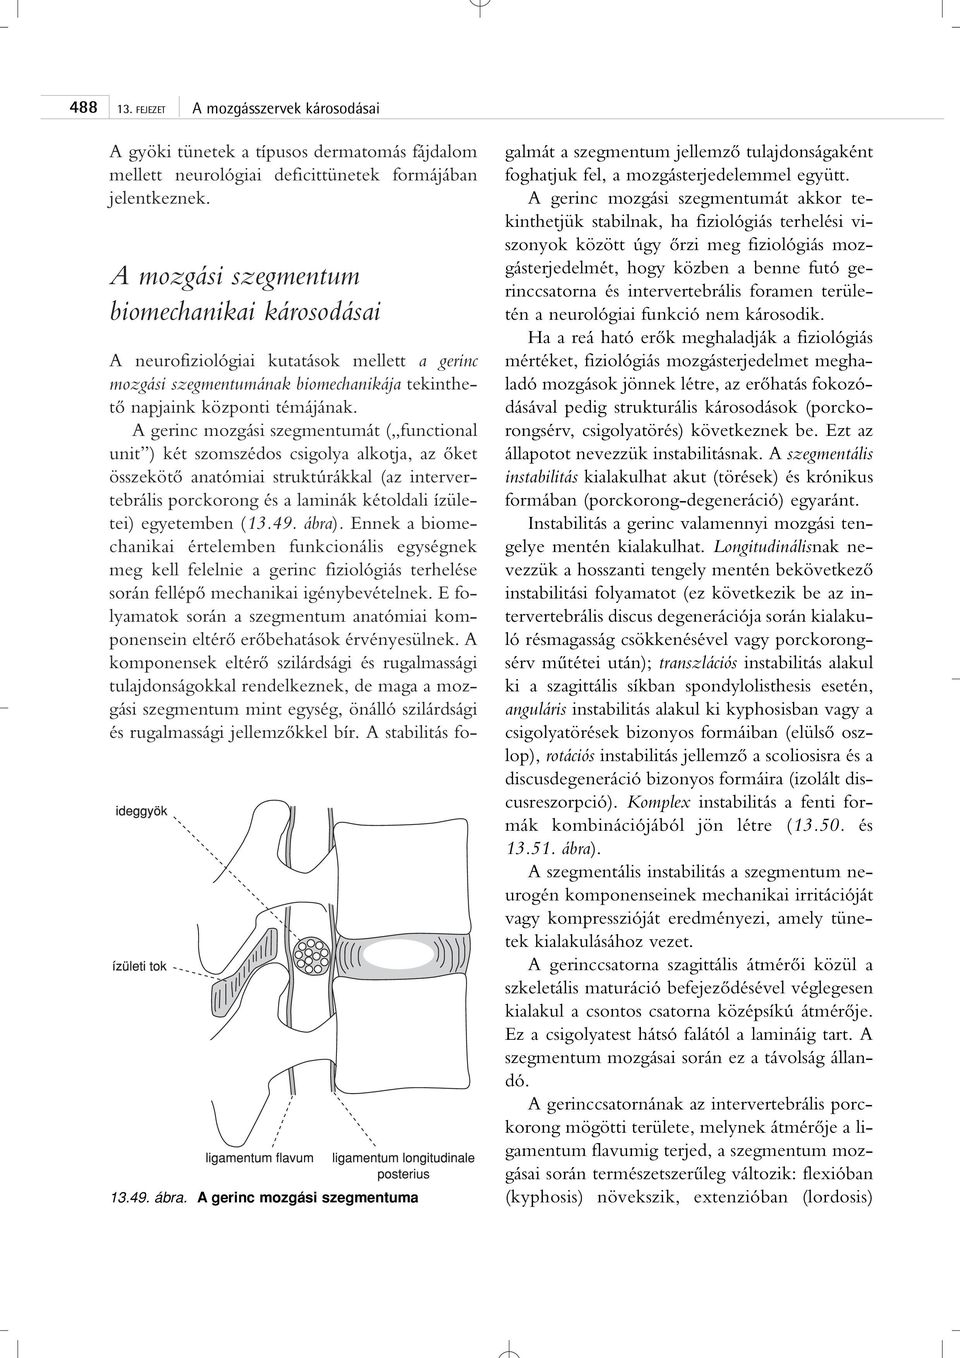 A gerinc mozgási szegmentumát ( functional unit ) két szomszédos csigolya alkotja, az ôket összekötô anatómiai struktúrákkal (az intervertebrális porckorong és a laminák kétoldali ízületei)